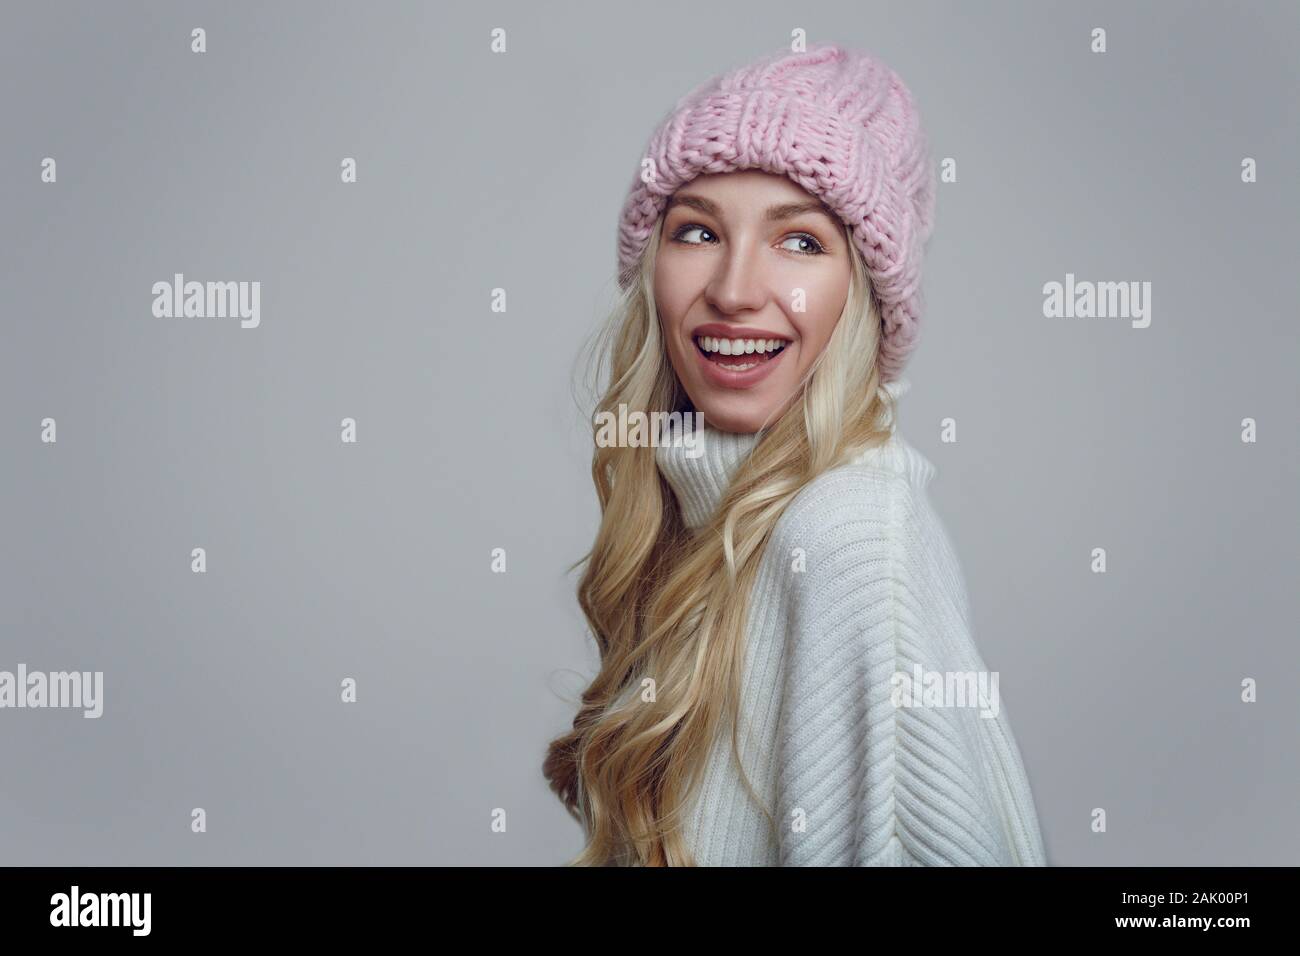 Jeune femme avec de longs cheveux blonds en rose d'hiver tricoté hat retour sur son épaule avec un sourire rayonnant sur un arrière-plan gris Banque D'Images